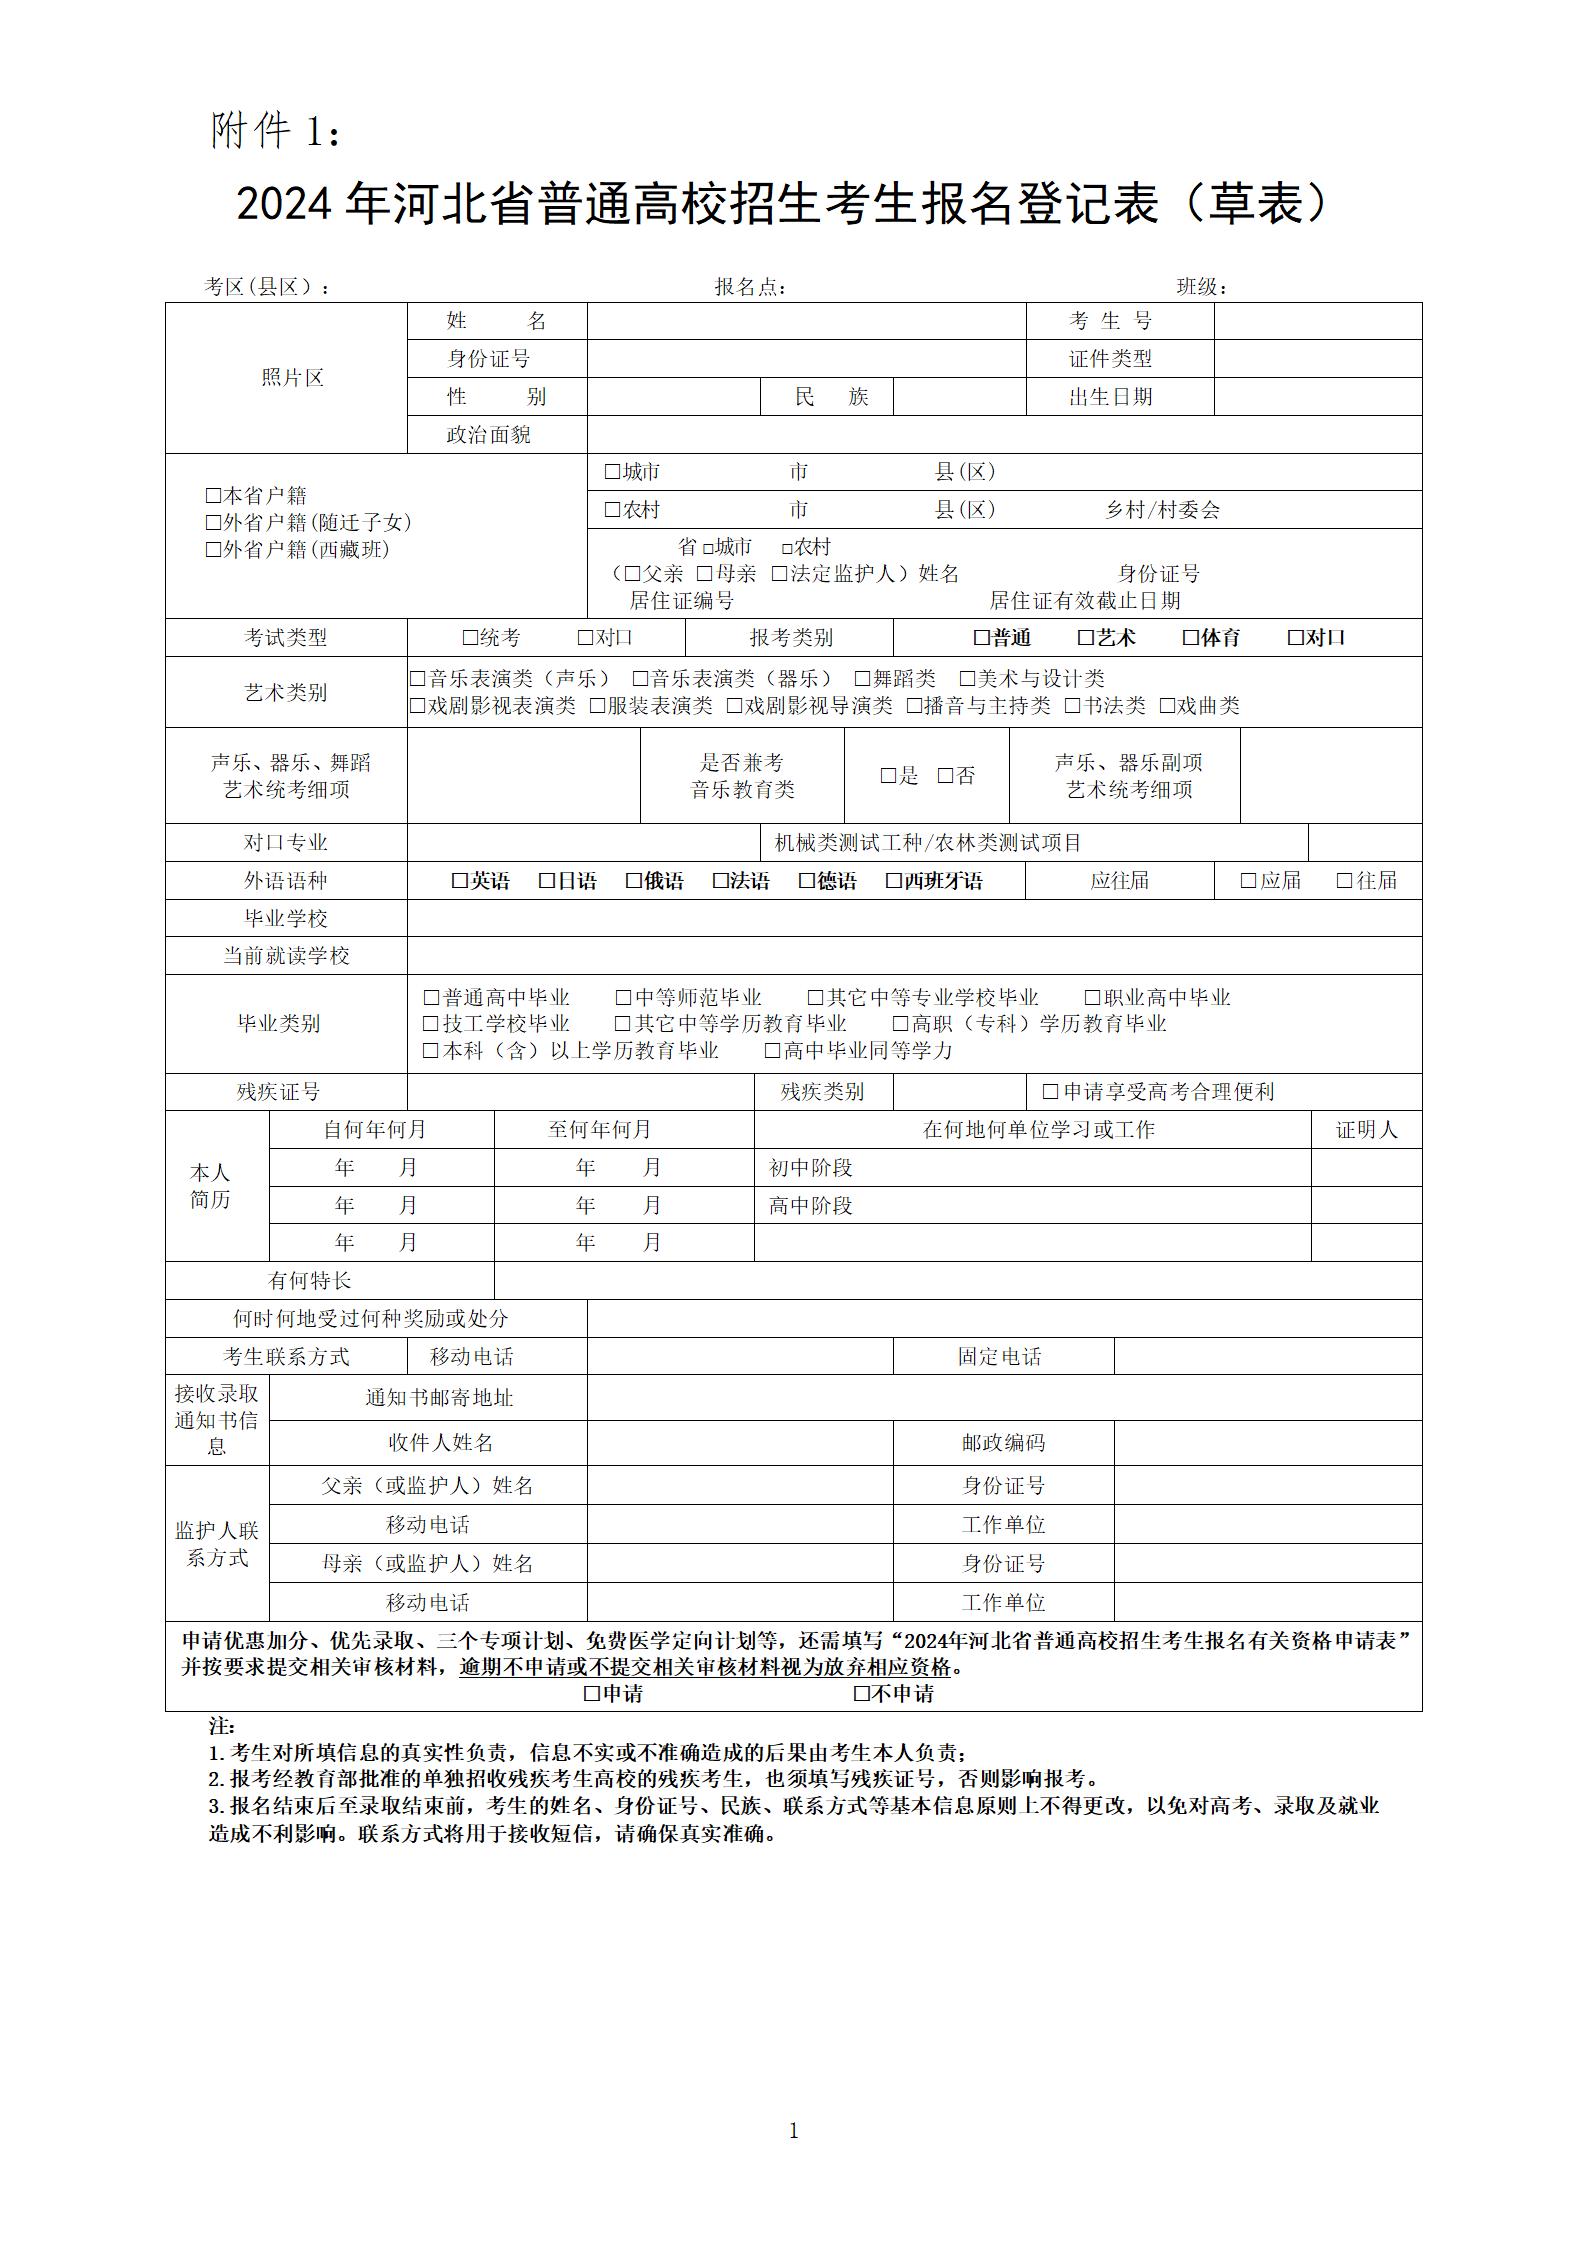 2024年河北省普通高校招生考生报名登记表（草表）及填写说明 图1